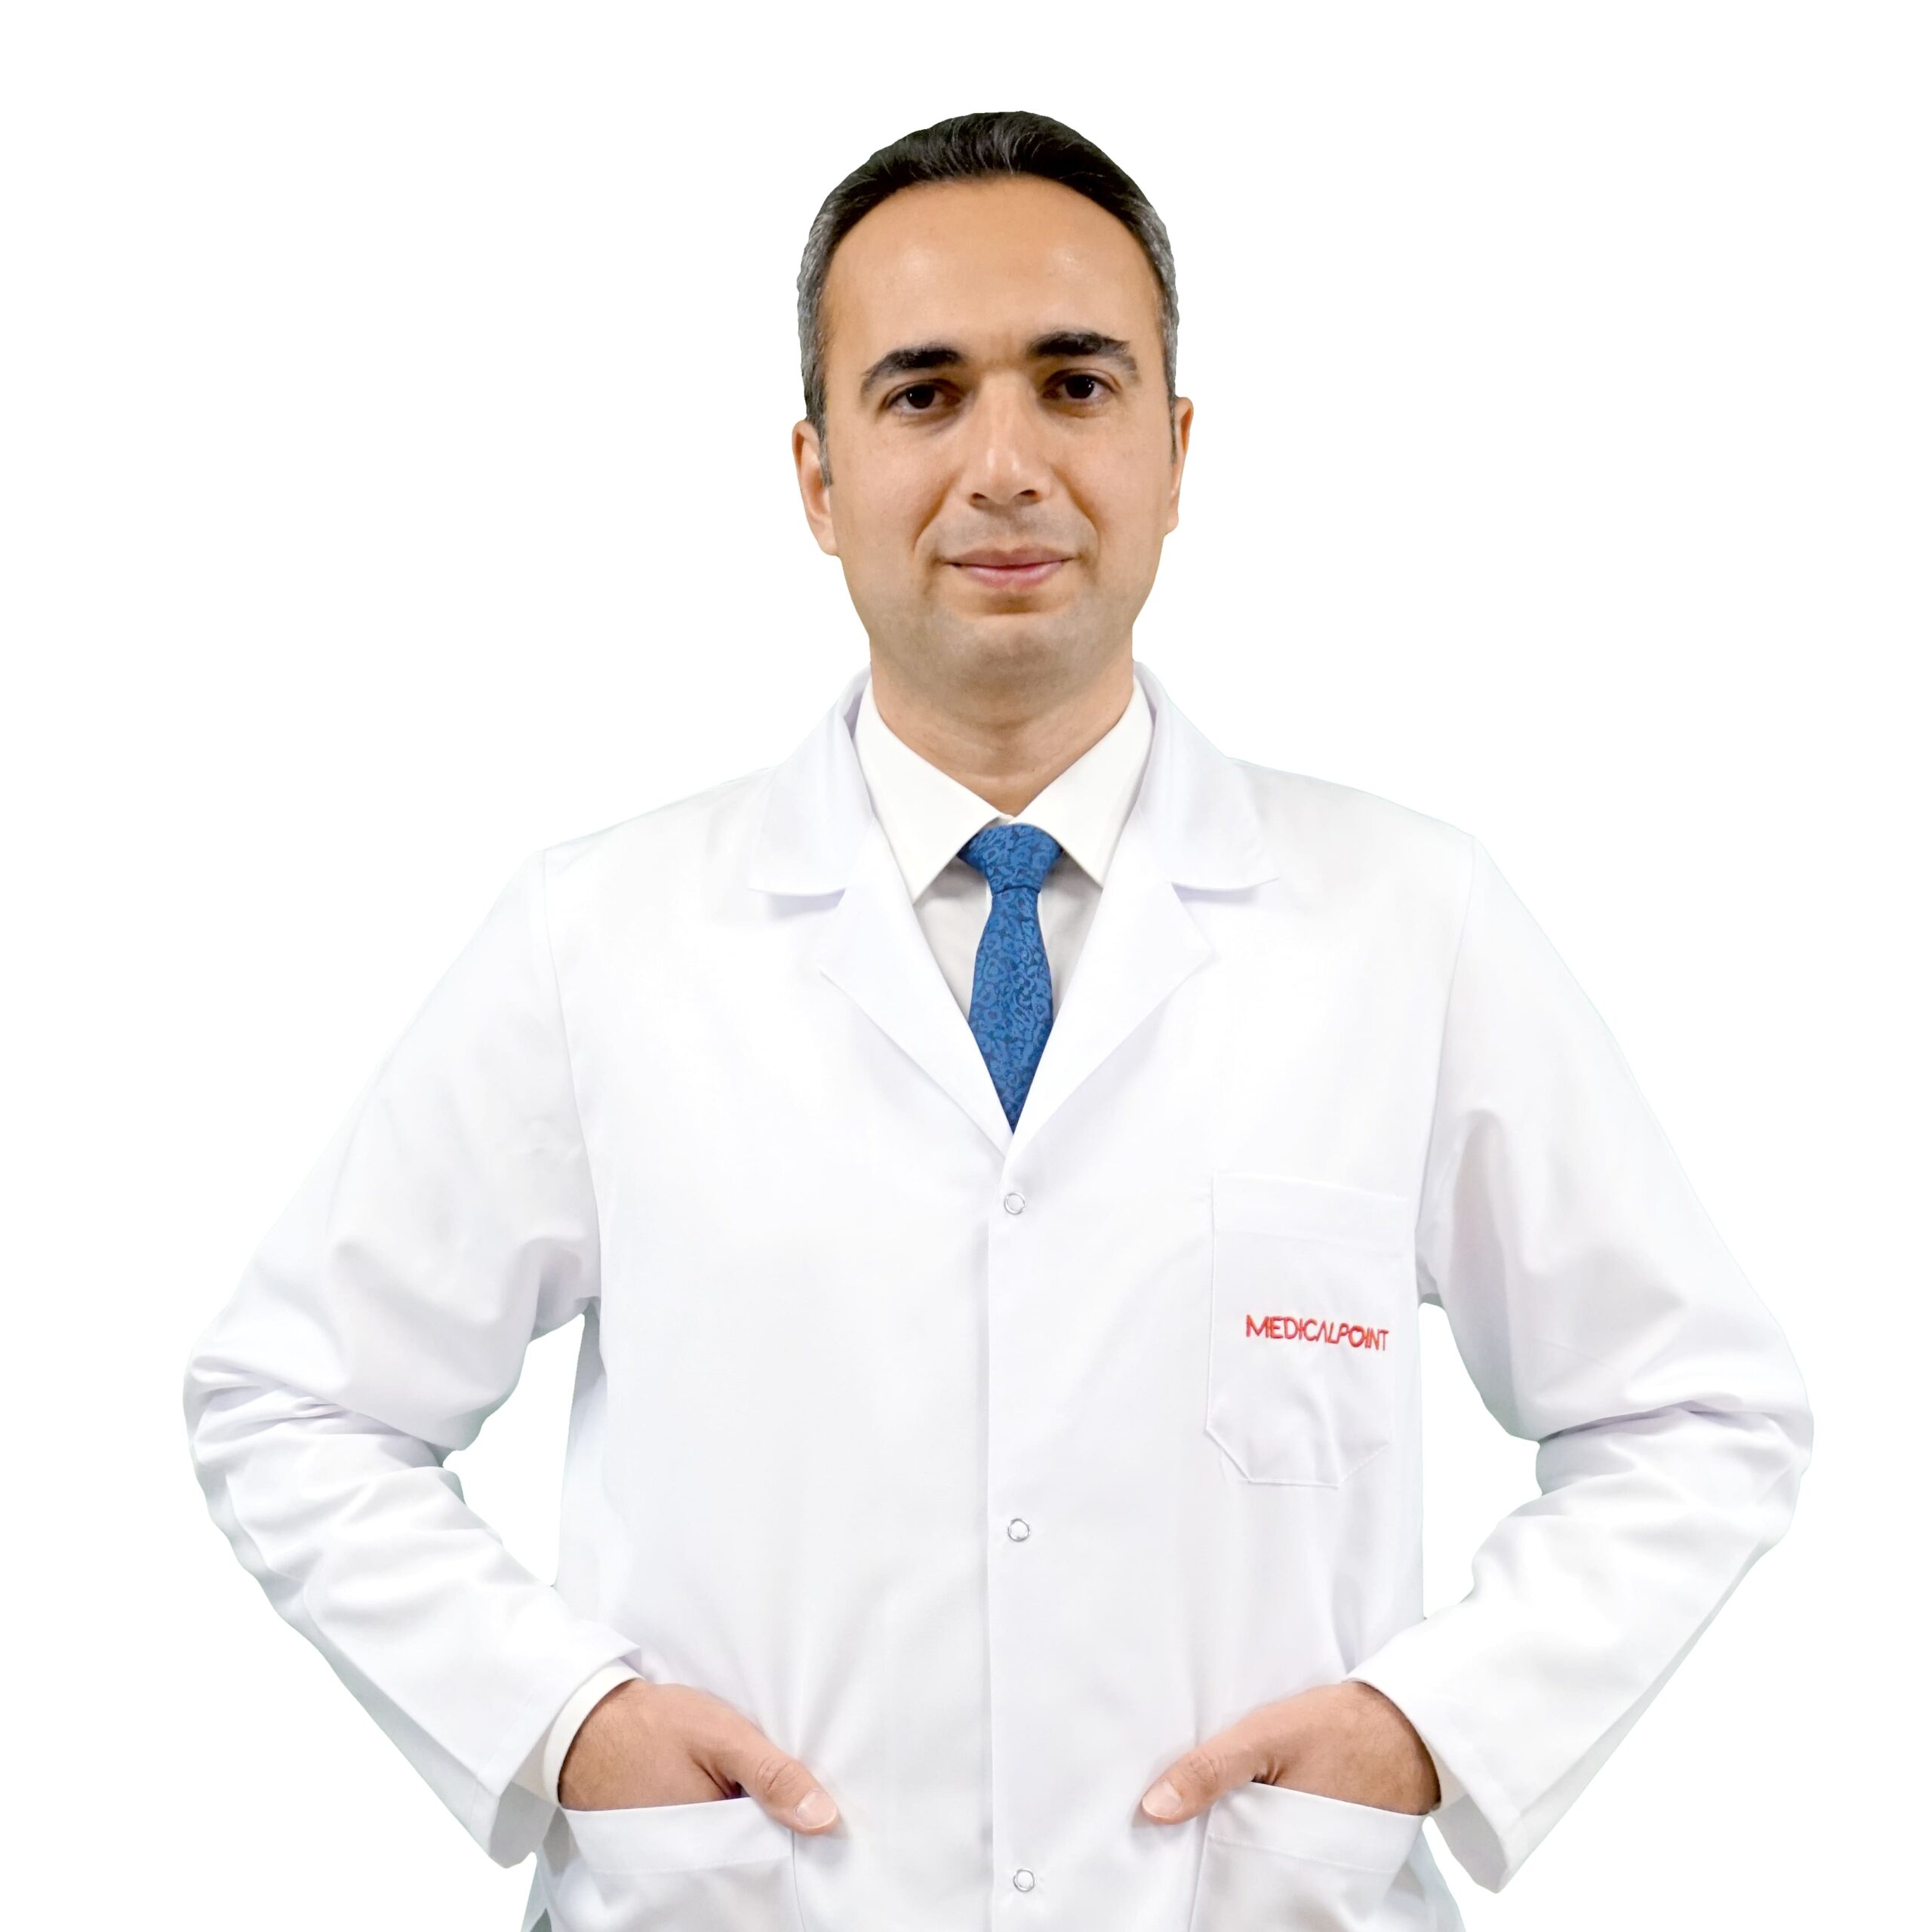 Göz sağlığı ve hastalıkları uzmanı Doç. Dr. Yavuzer, Medical Point Gaziantep’te